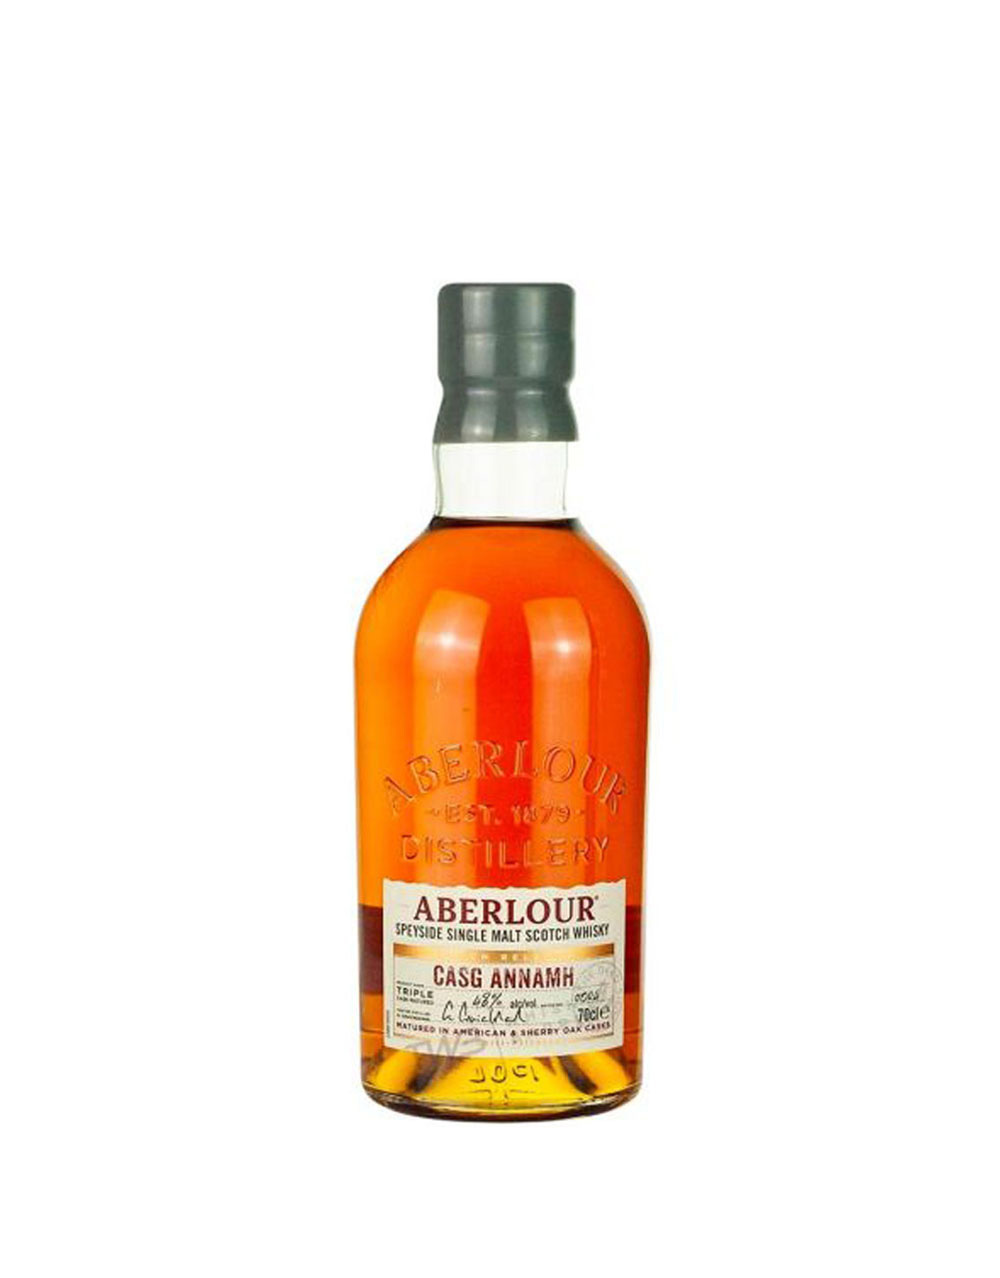 Aberlour Casg Annamh Batch 4 Single Malt Scotch Whisky